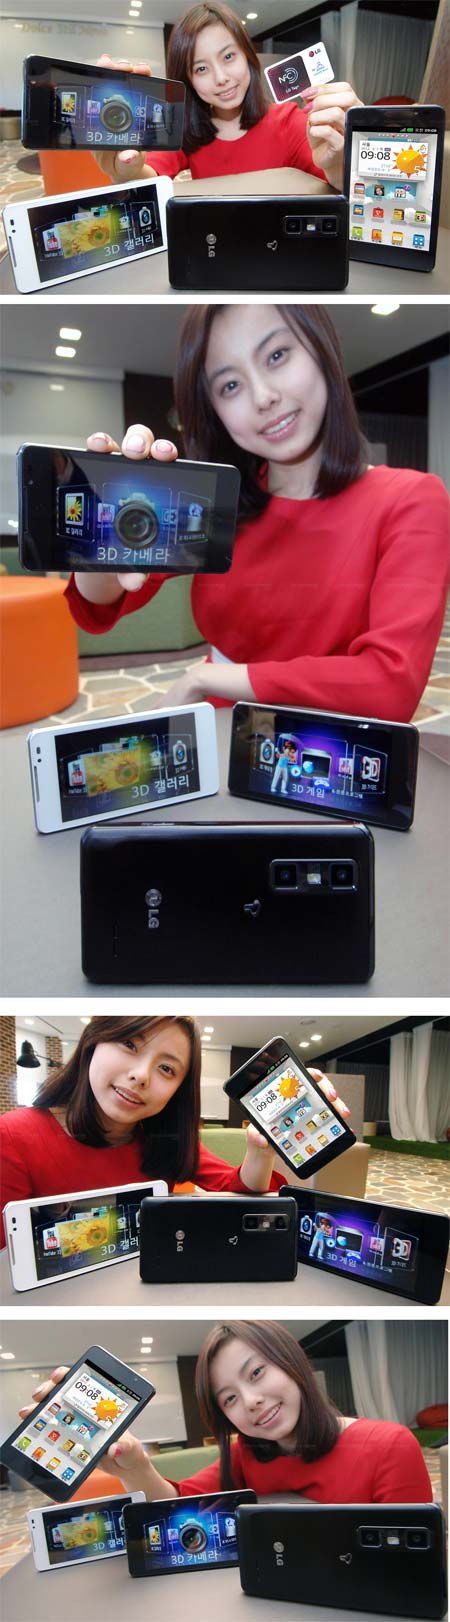 Азиатская девушка демонстрирует смартфон LG Optimus 3D Max